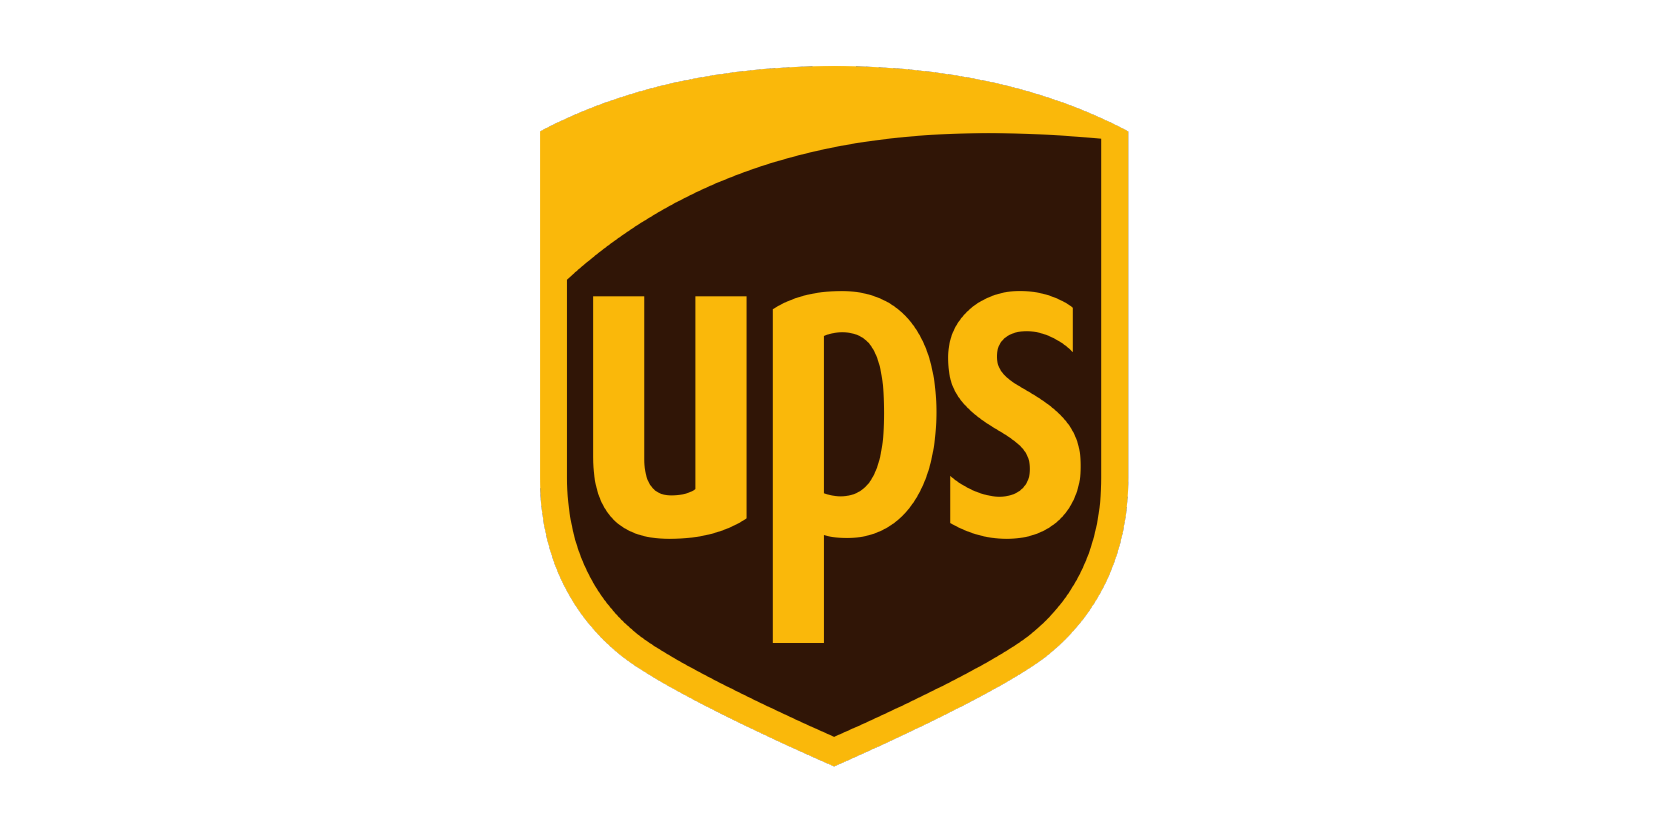 UPS - United Parcel Service Logo